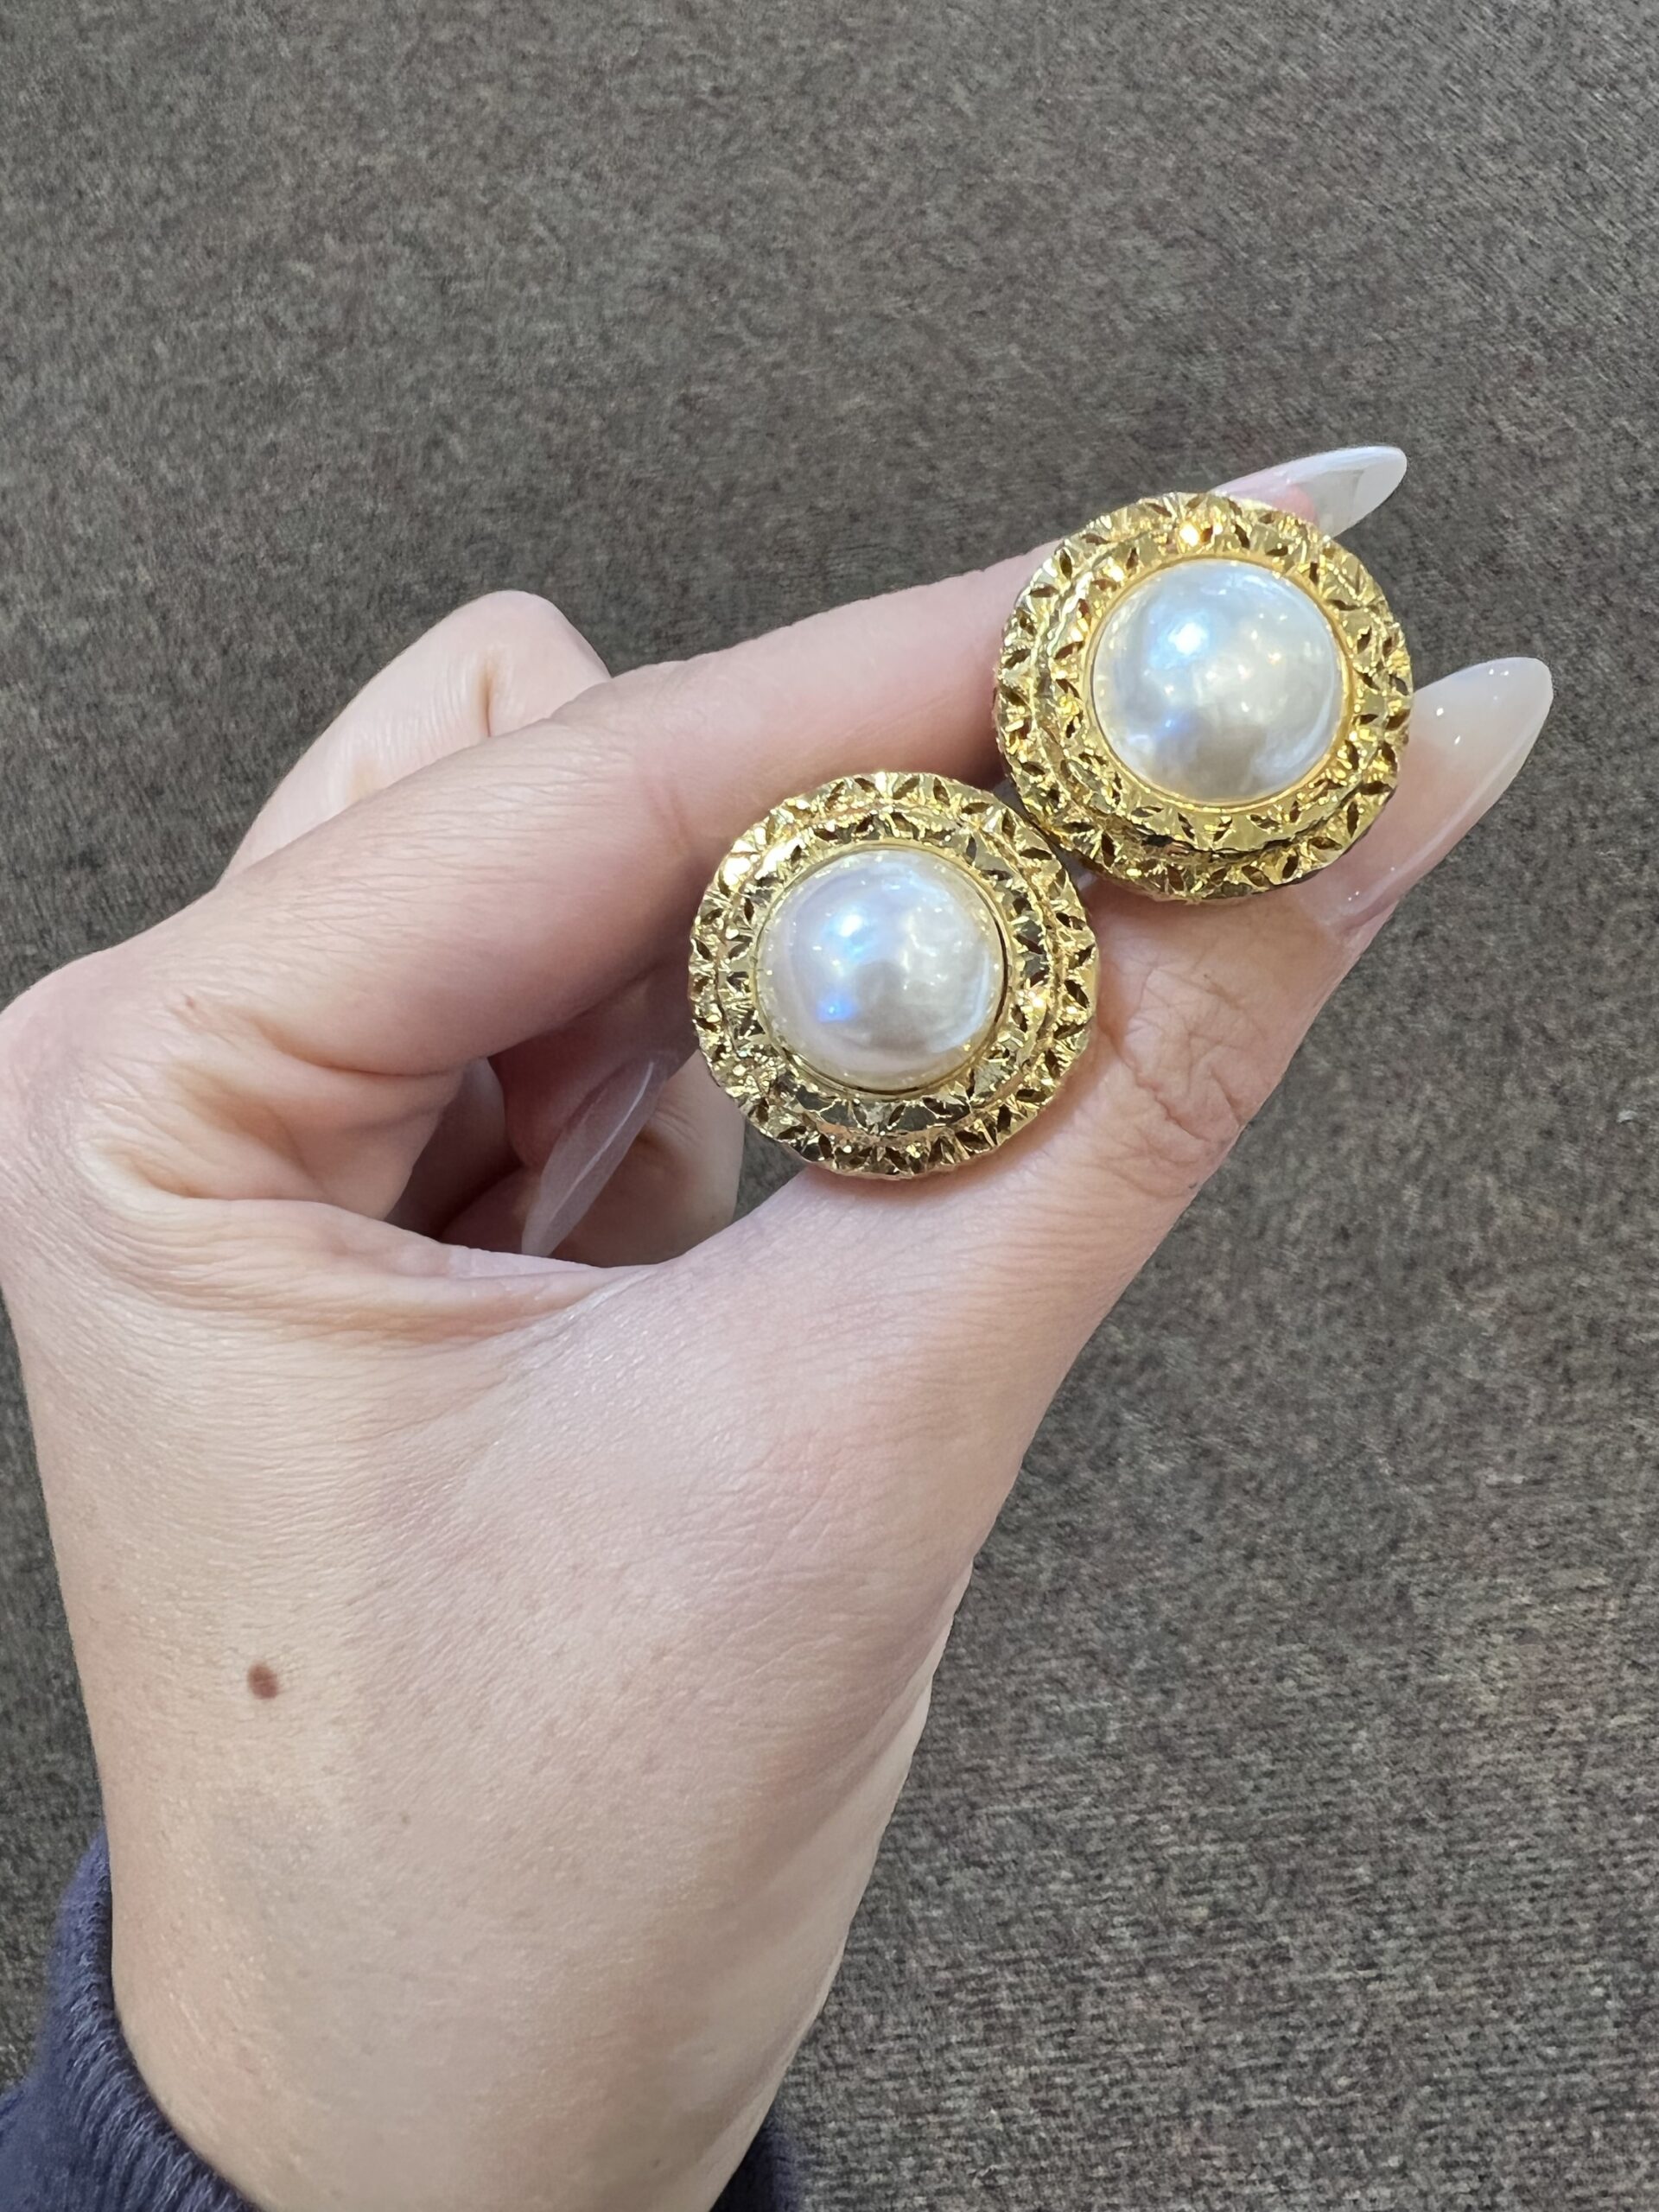 14k Yellow Gold Pearl & Diamonds Earrings 10 mm White Pearl Earrings Push  Post | eBay